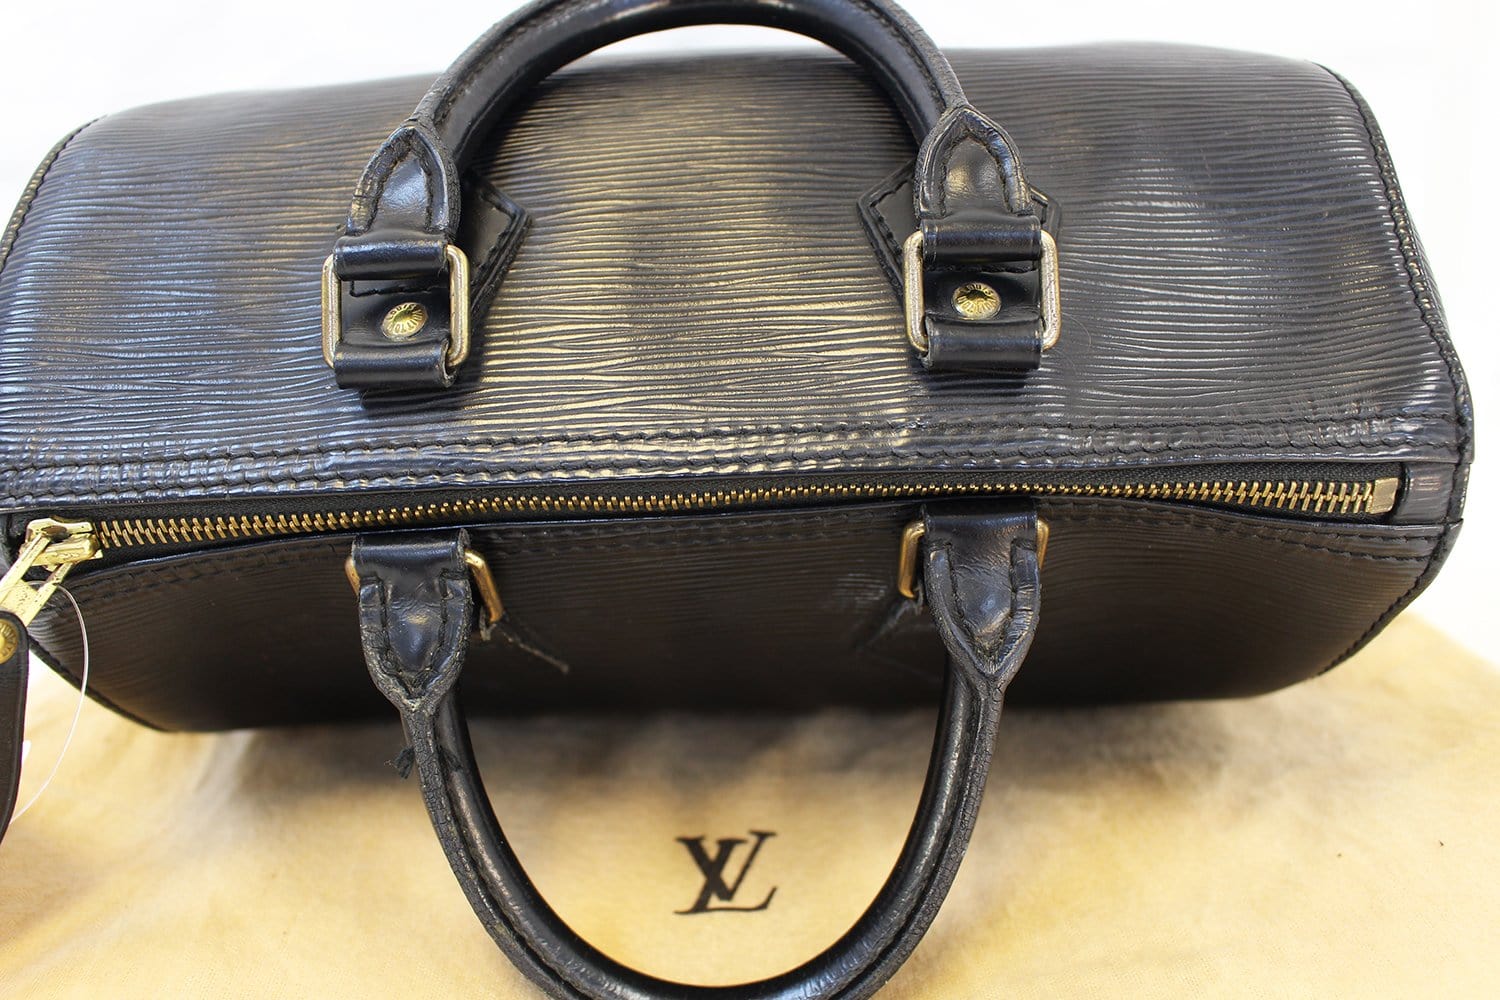 Louis Vuitton Speedy 25 Black Epi Leather handbag VI0994